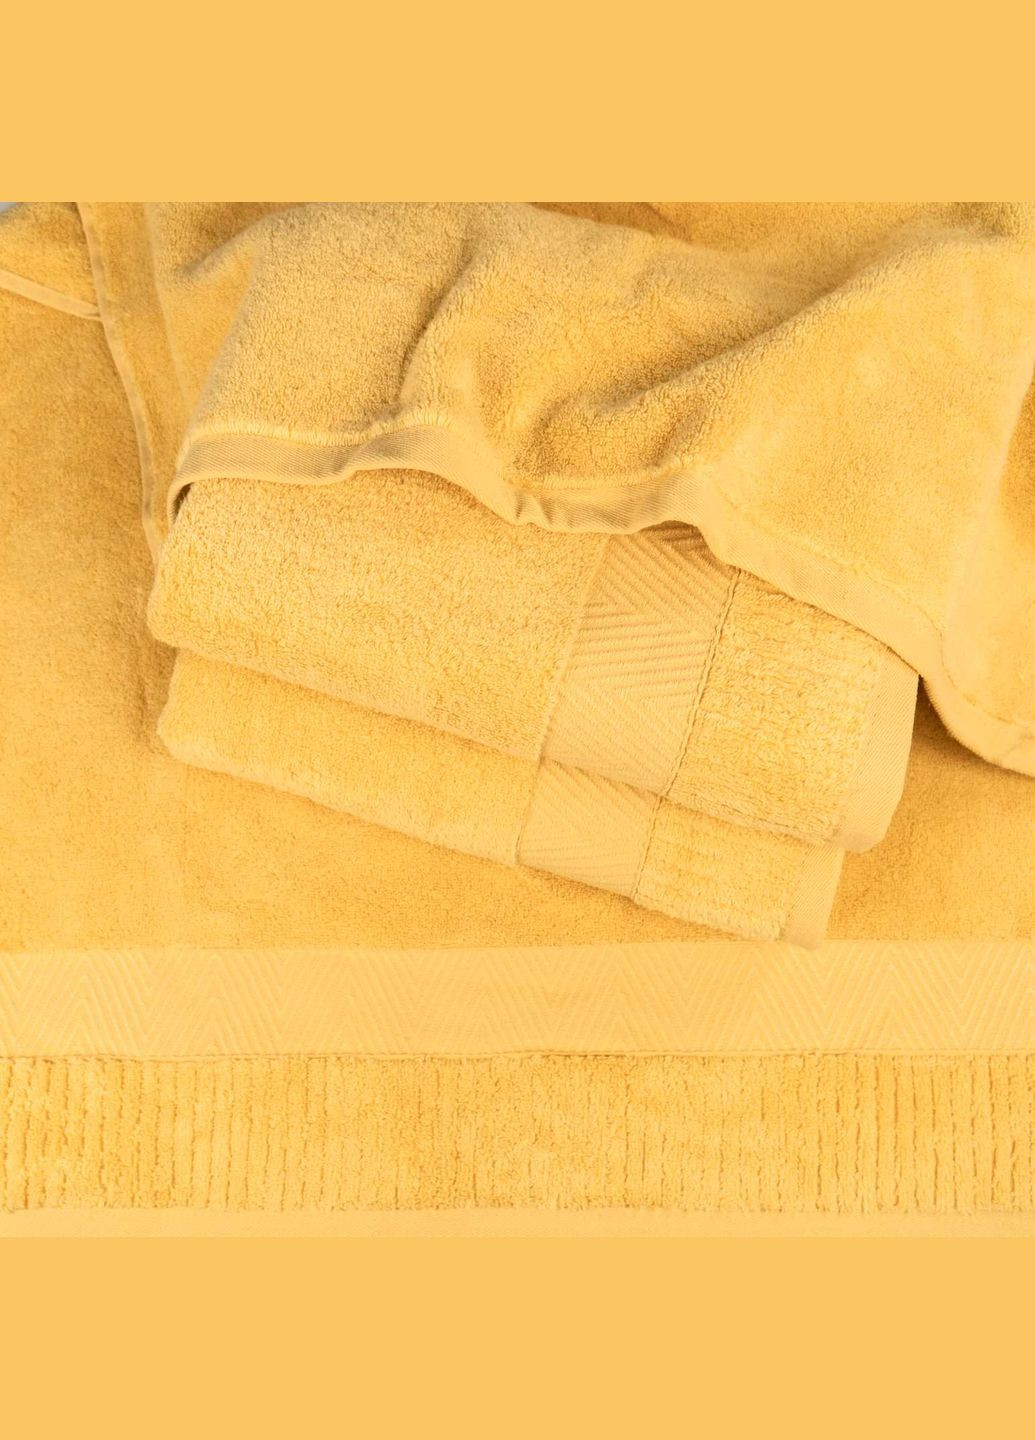 GM Textile набір махрових рушників зеро твіст бордюр 3шт 50x90см, 50x90см, 70x140см 550г/м2 (жовтий) жовтий виробництво -